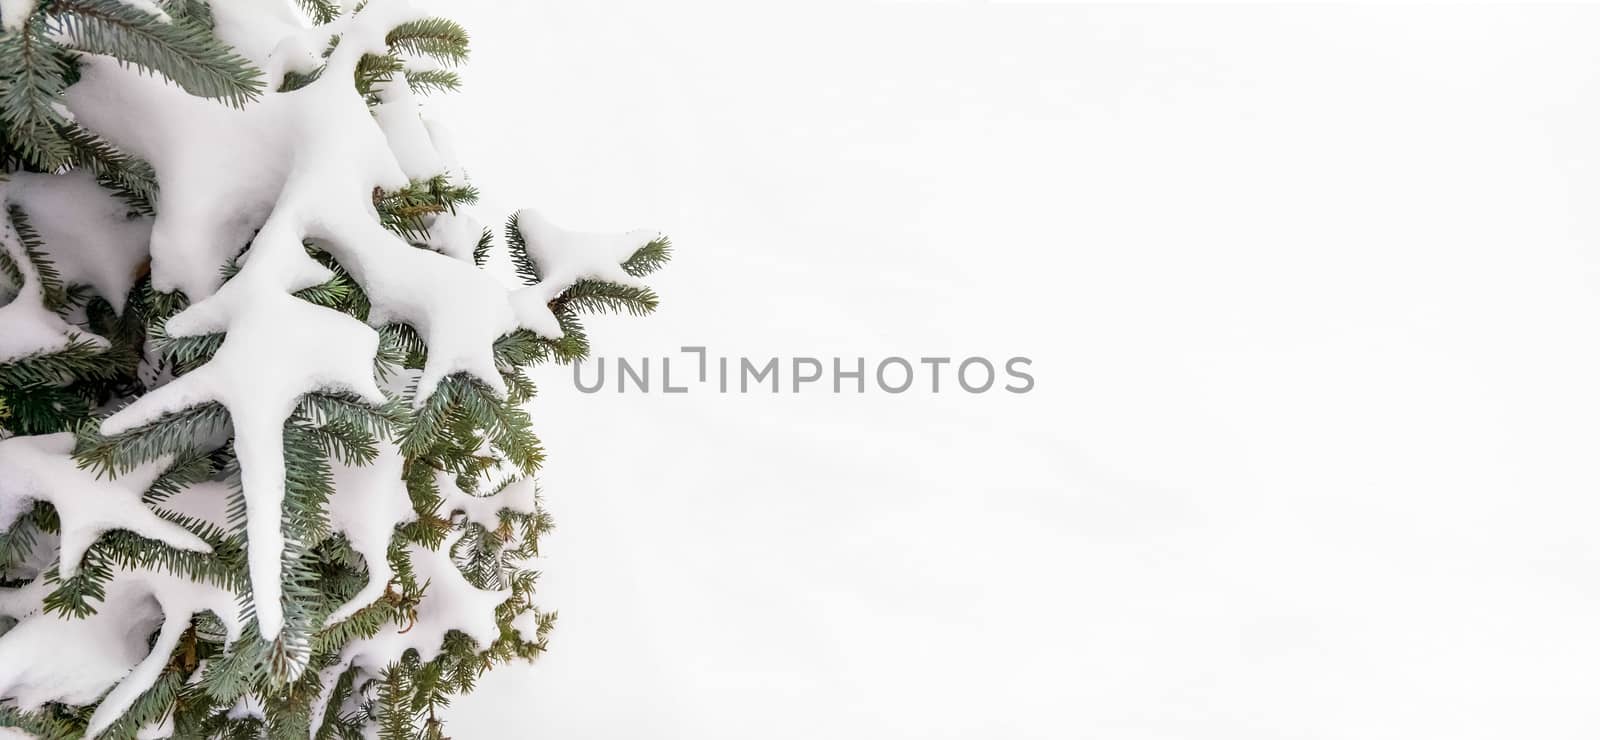 Snow on a Fir Branch by MaxalTamor